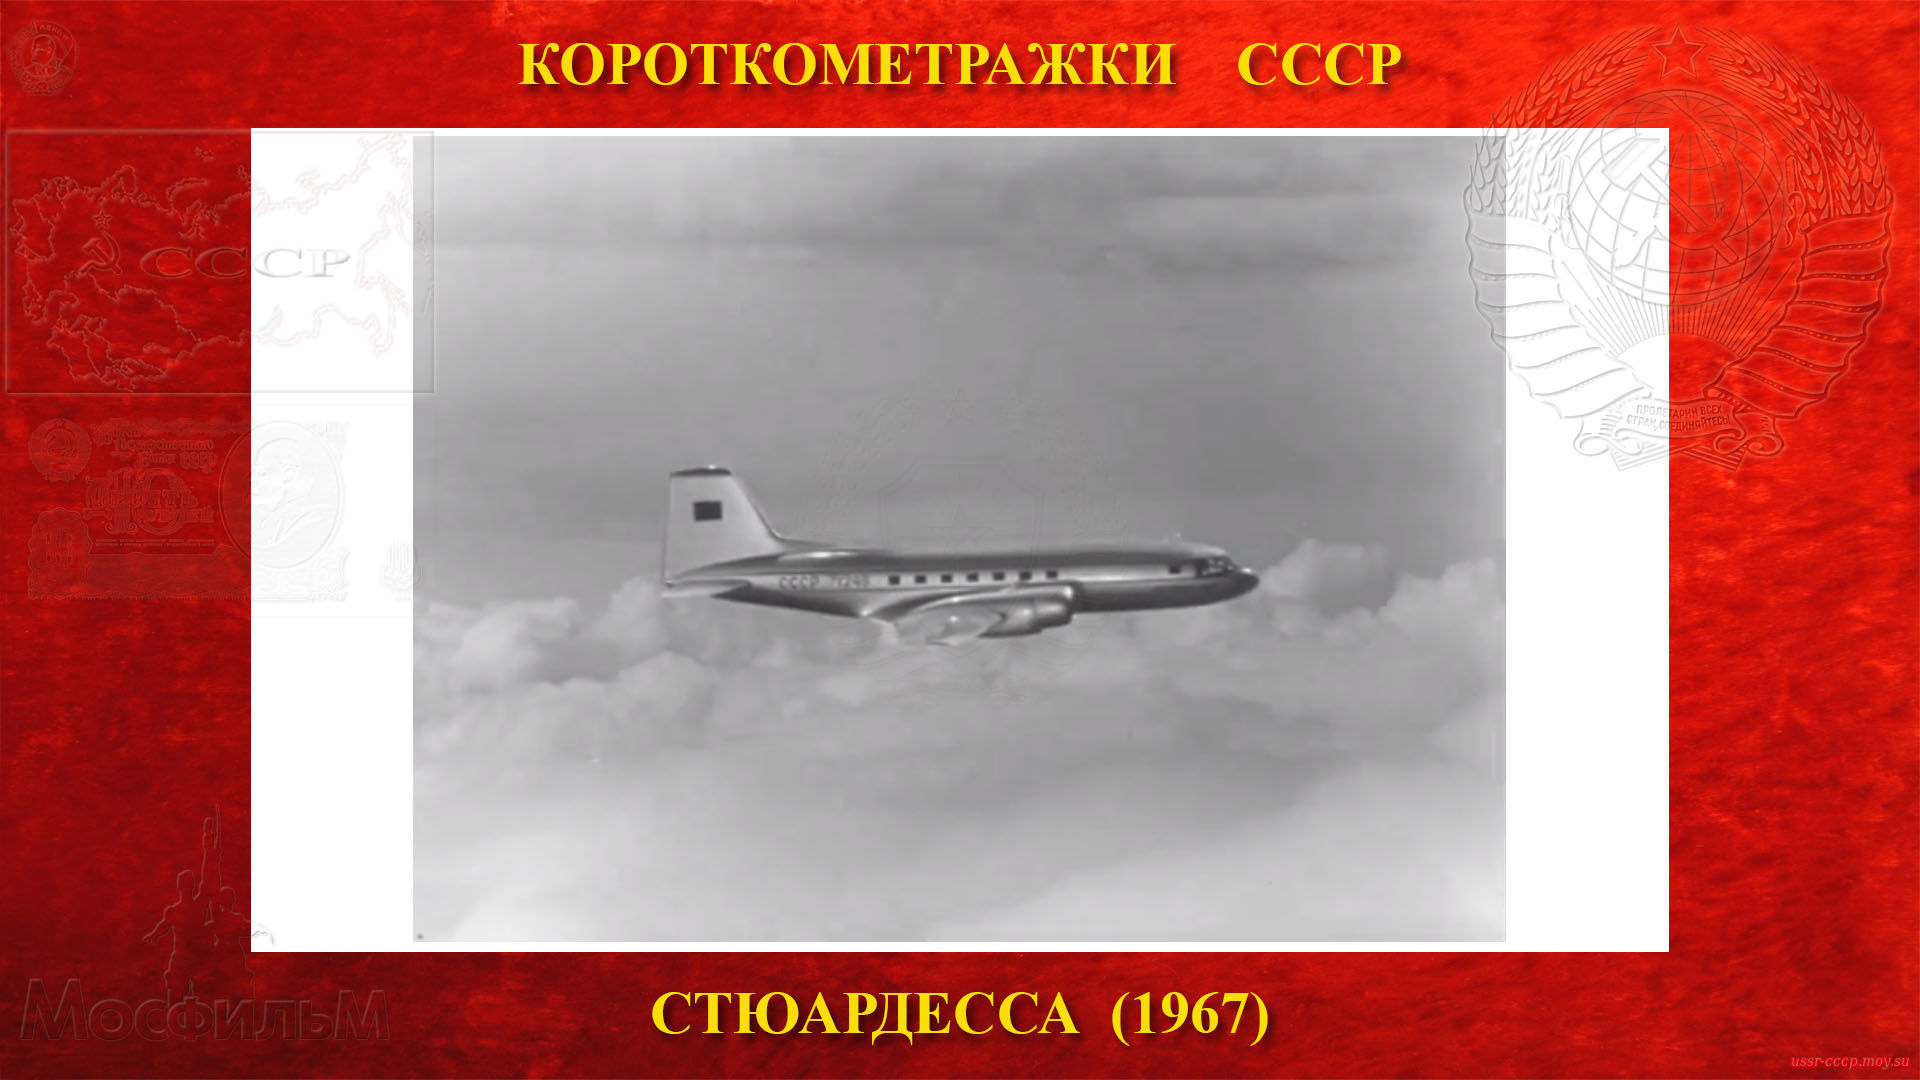 Стюардесса — В конце фильма показан летящий Ил-14 бортовой № СССР-71246.